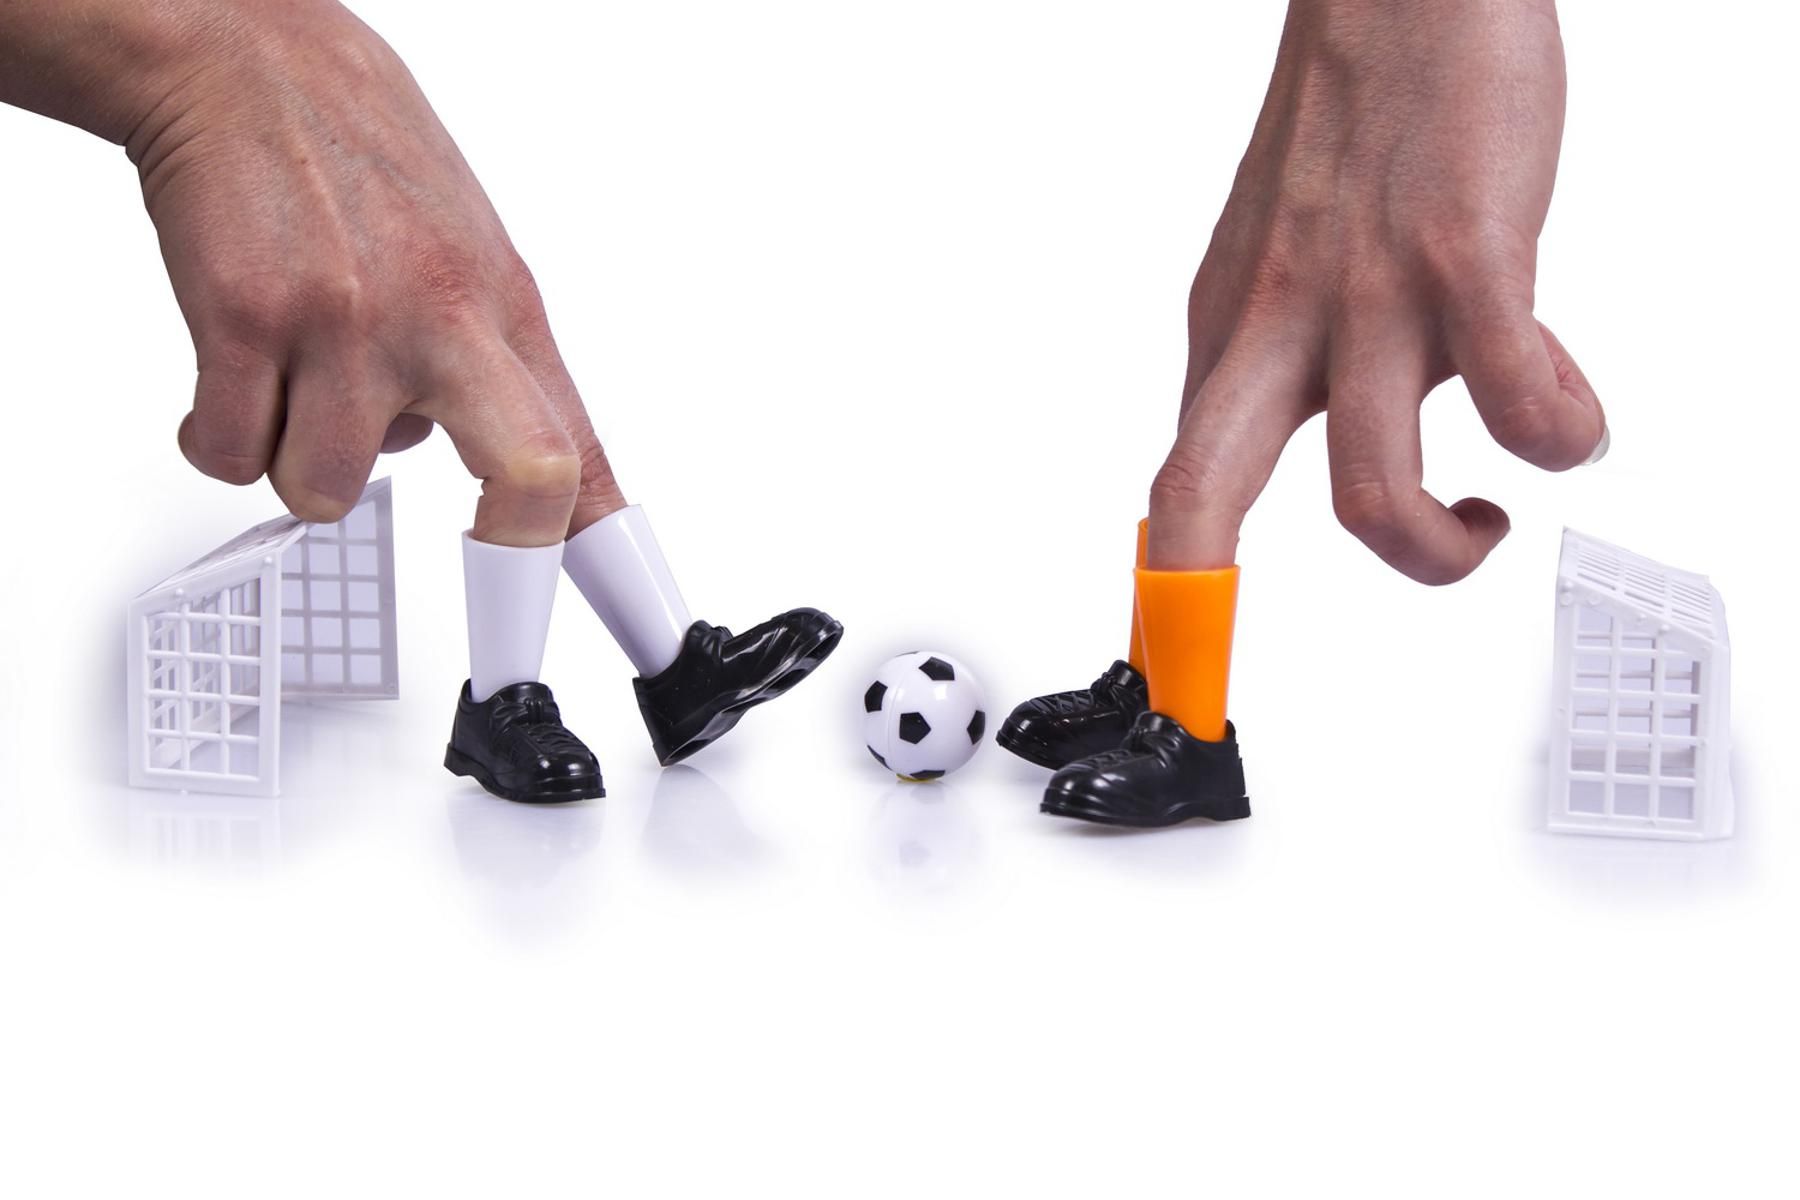 Настольная игра «Пальчиковый футбол»